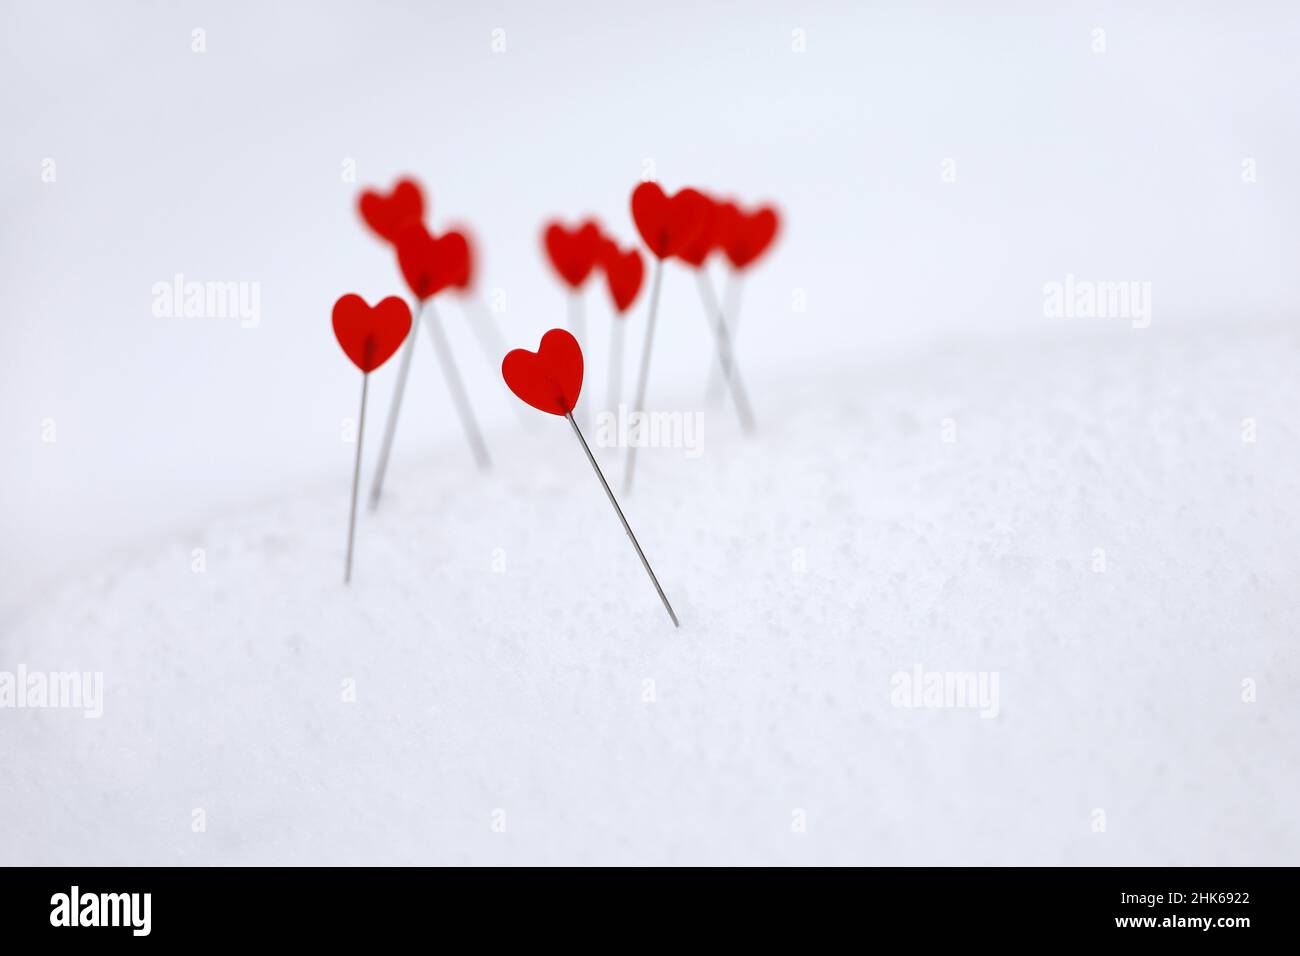 Coeurs rouges sur une neige, symboles de l'amour.Fond pour carte de vœux romantique, Saint-Valentin Banque D'Images